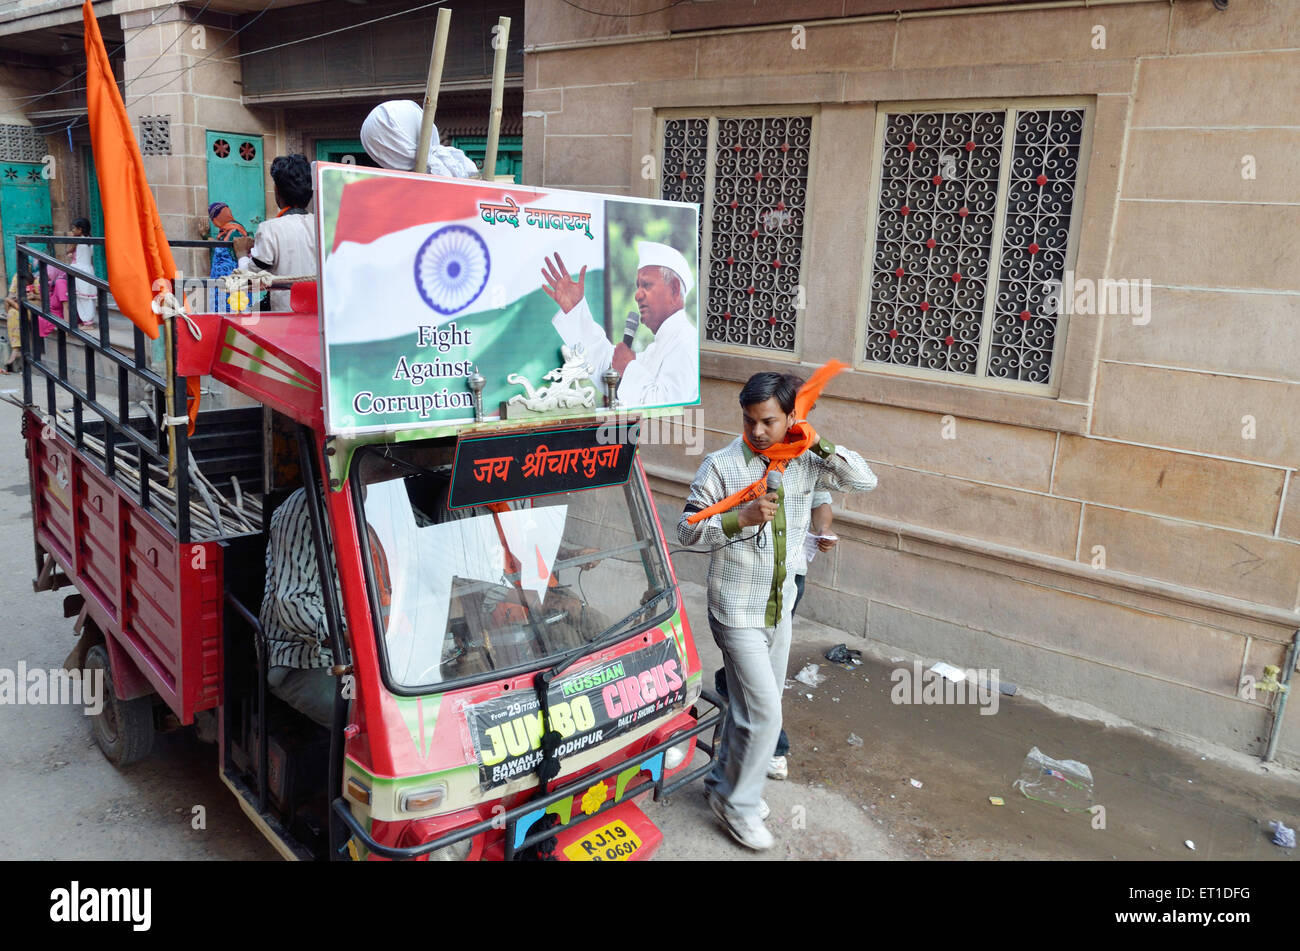 Procession de lutte contre la corruption à l'appui de Anna Hazare sur road Jodhpur Rajasthan Inde Asie Banque D'Images